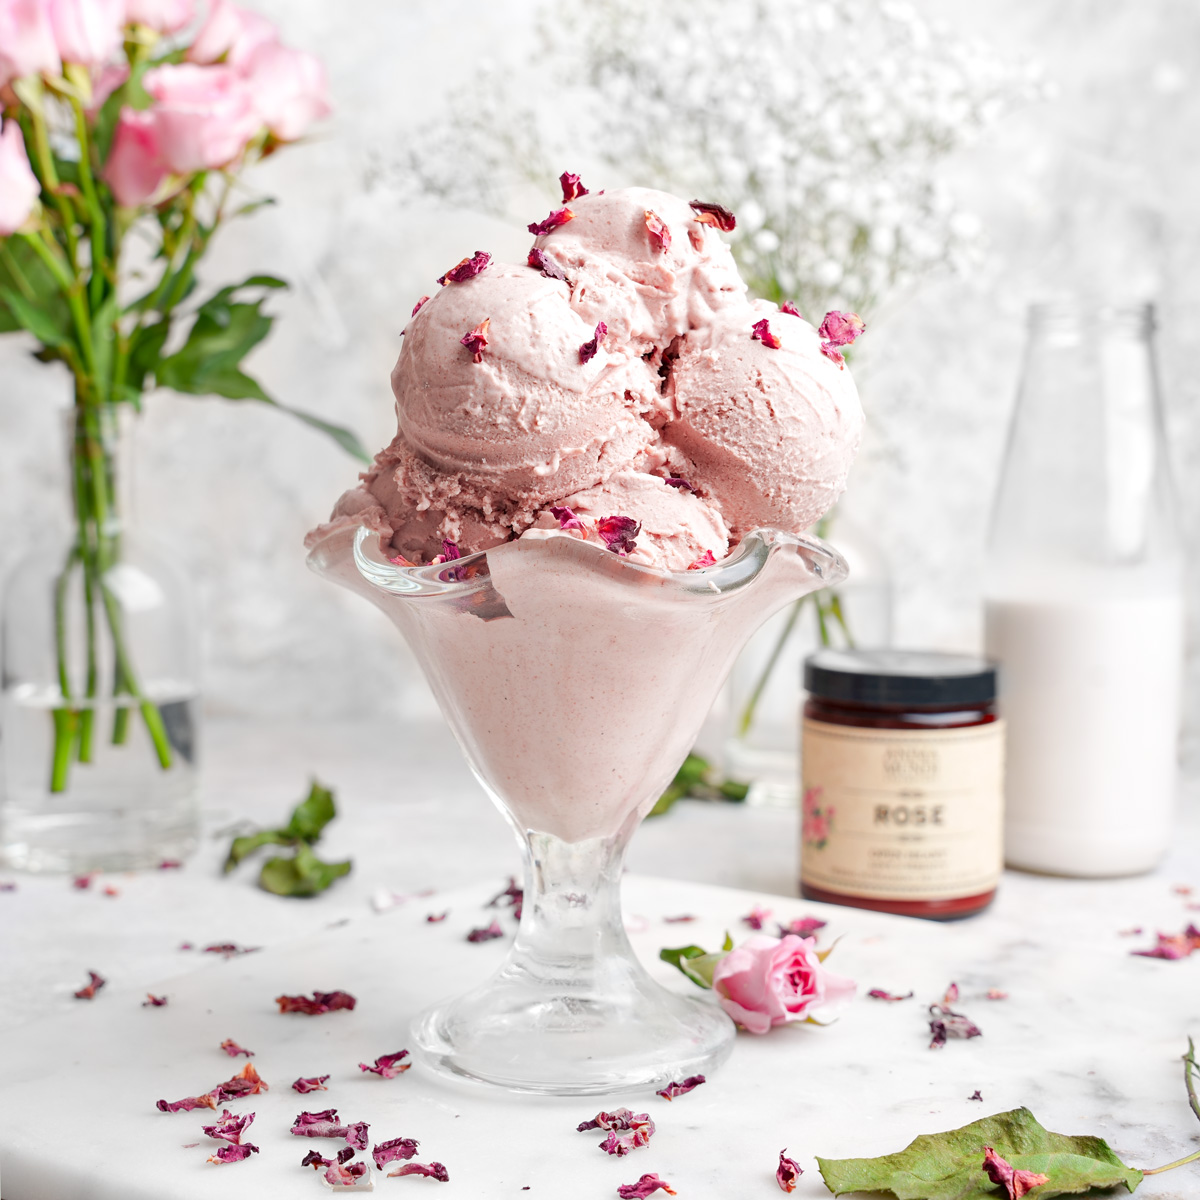 rose ice cream recipe